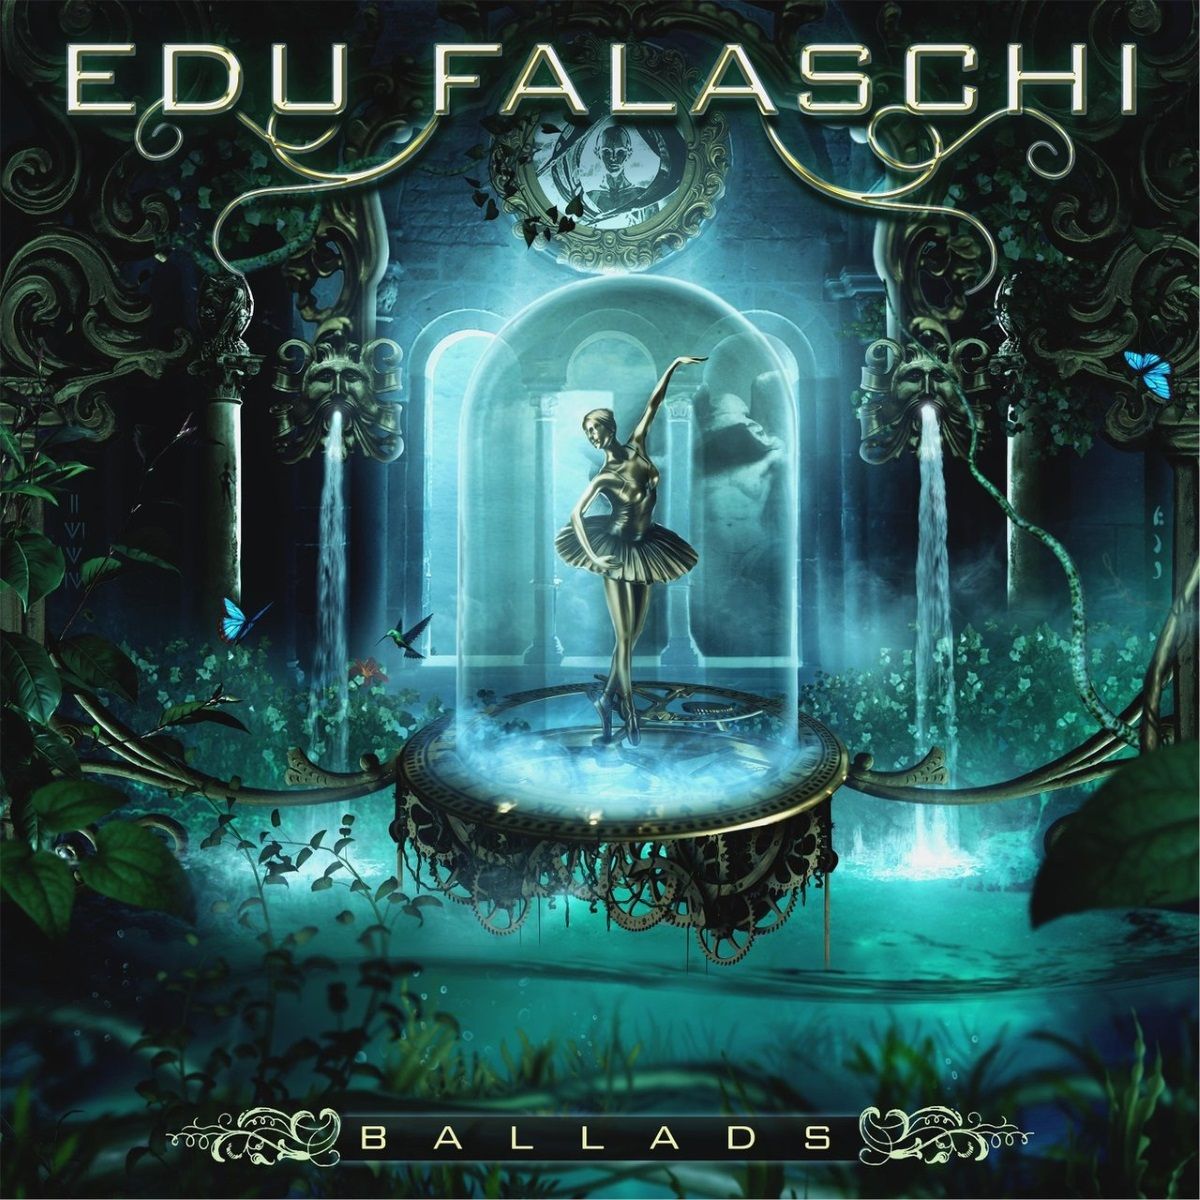 Imagem do álbum Ballads do(a) artista Edu Falaschi